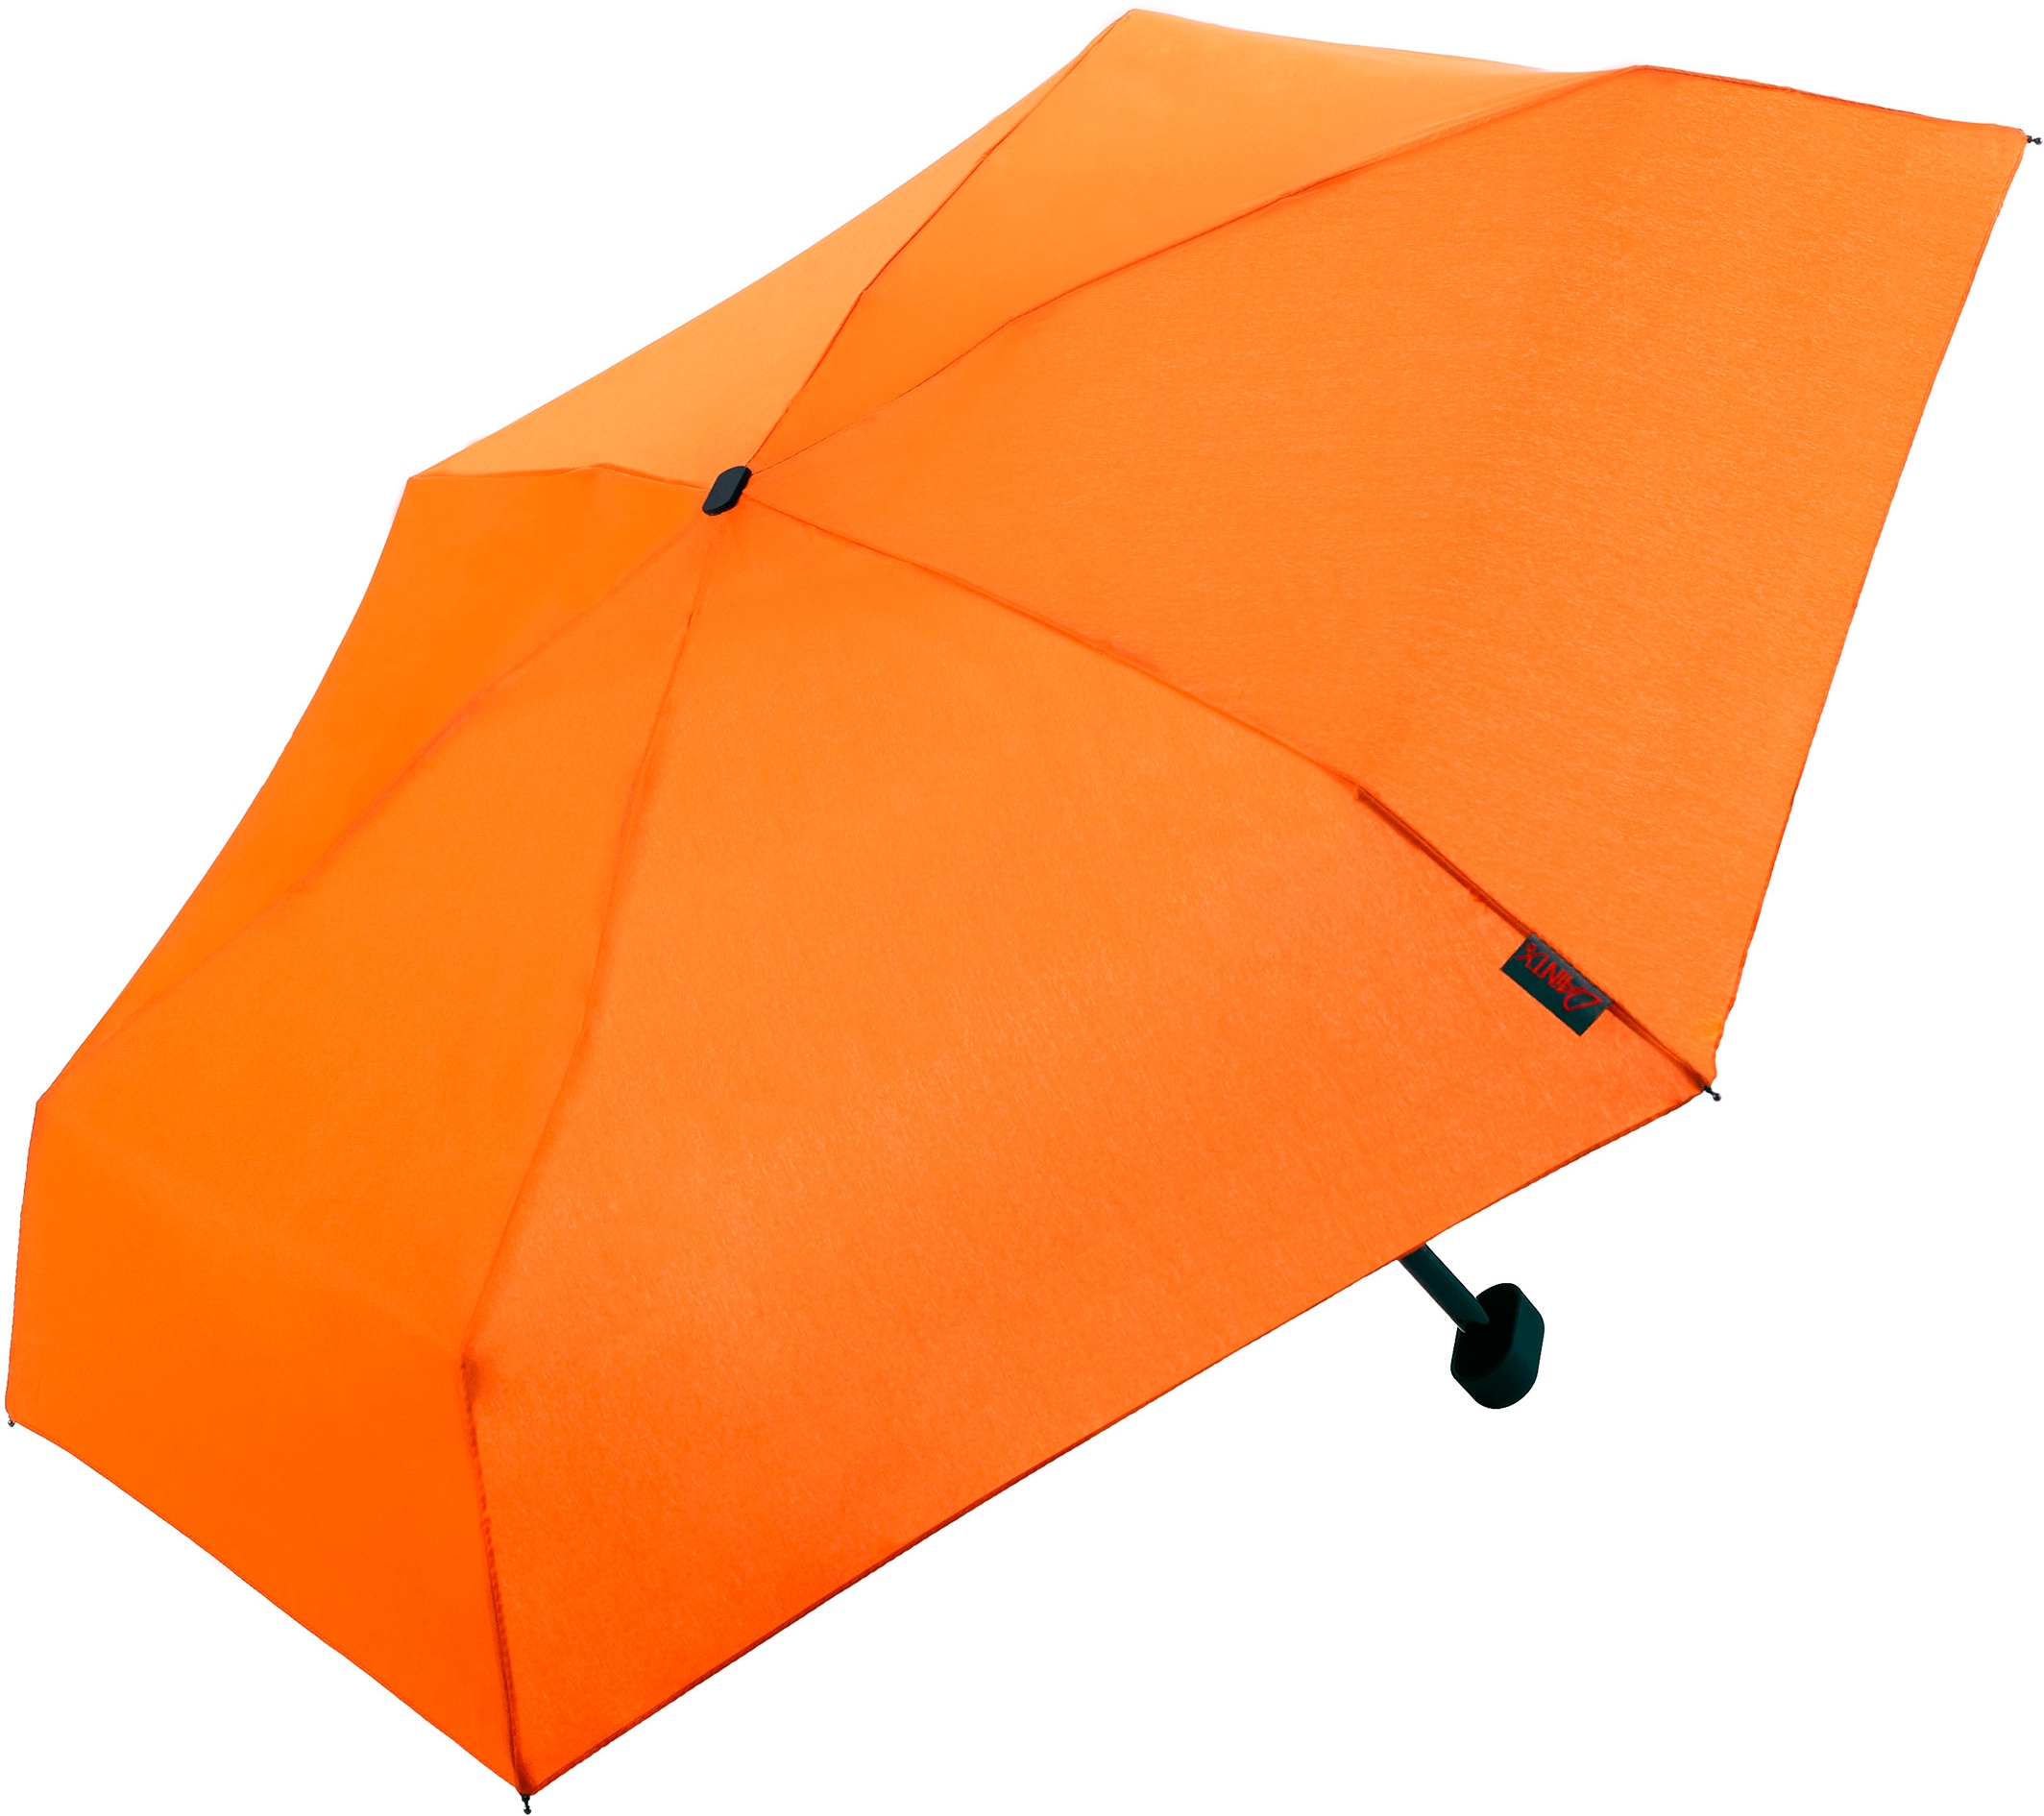 Taschenregenschirm »Dainty, orange«, besonders leicht, super flach und extra klein